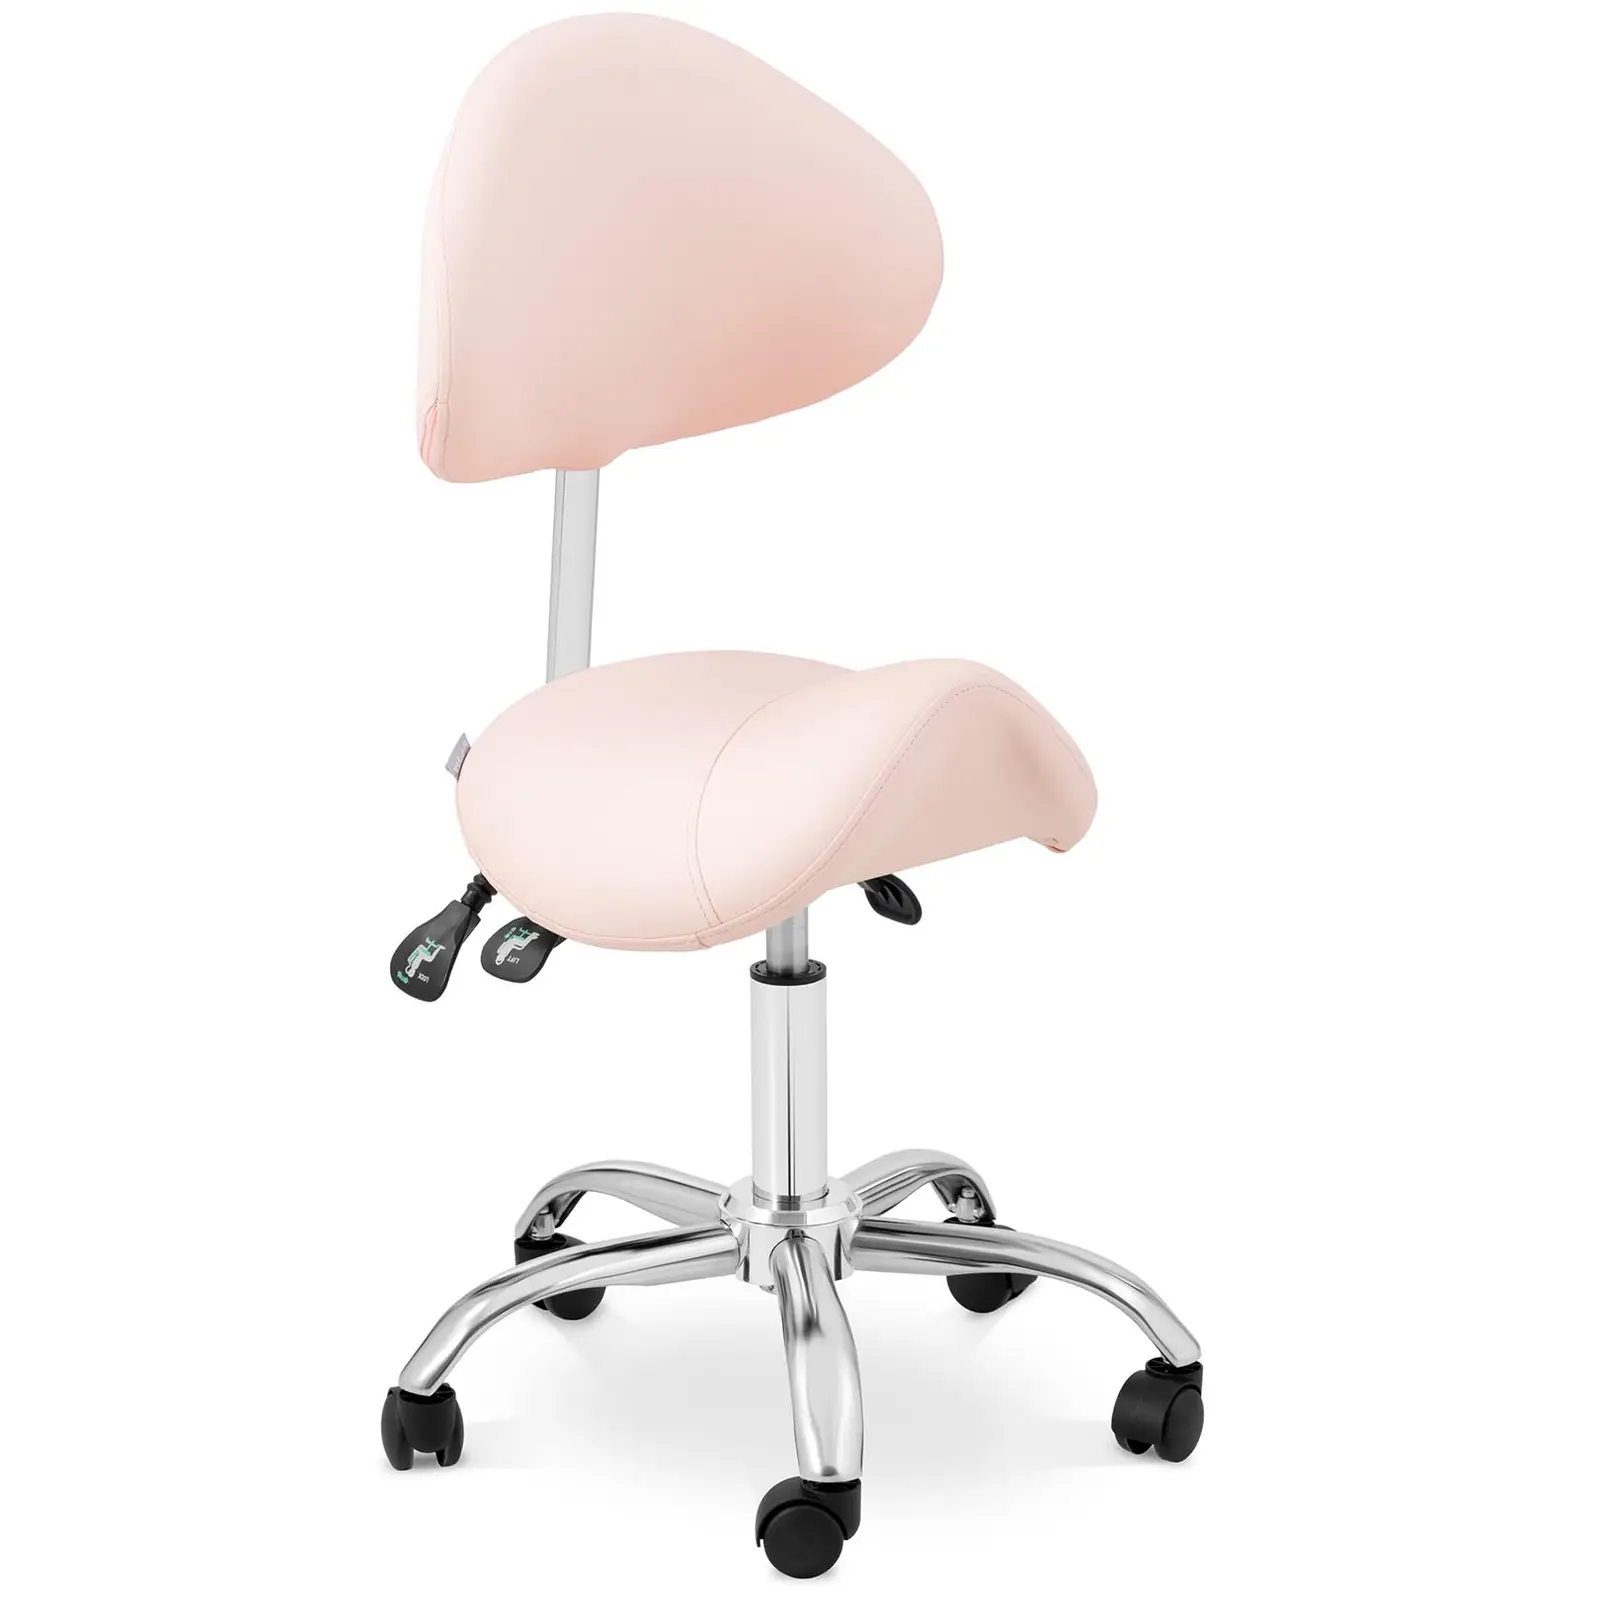 Krzesło siodłowe - oparcie i siedzisko z regulacją wysokości - 55-69 cm - 150 kg - różowe, srebrne